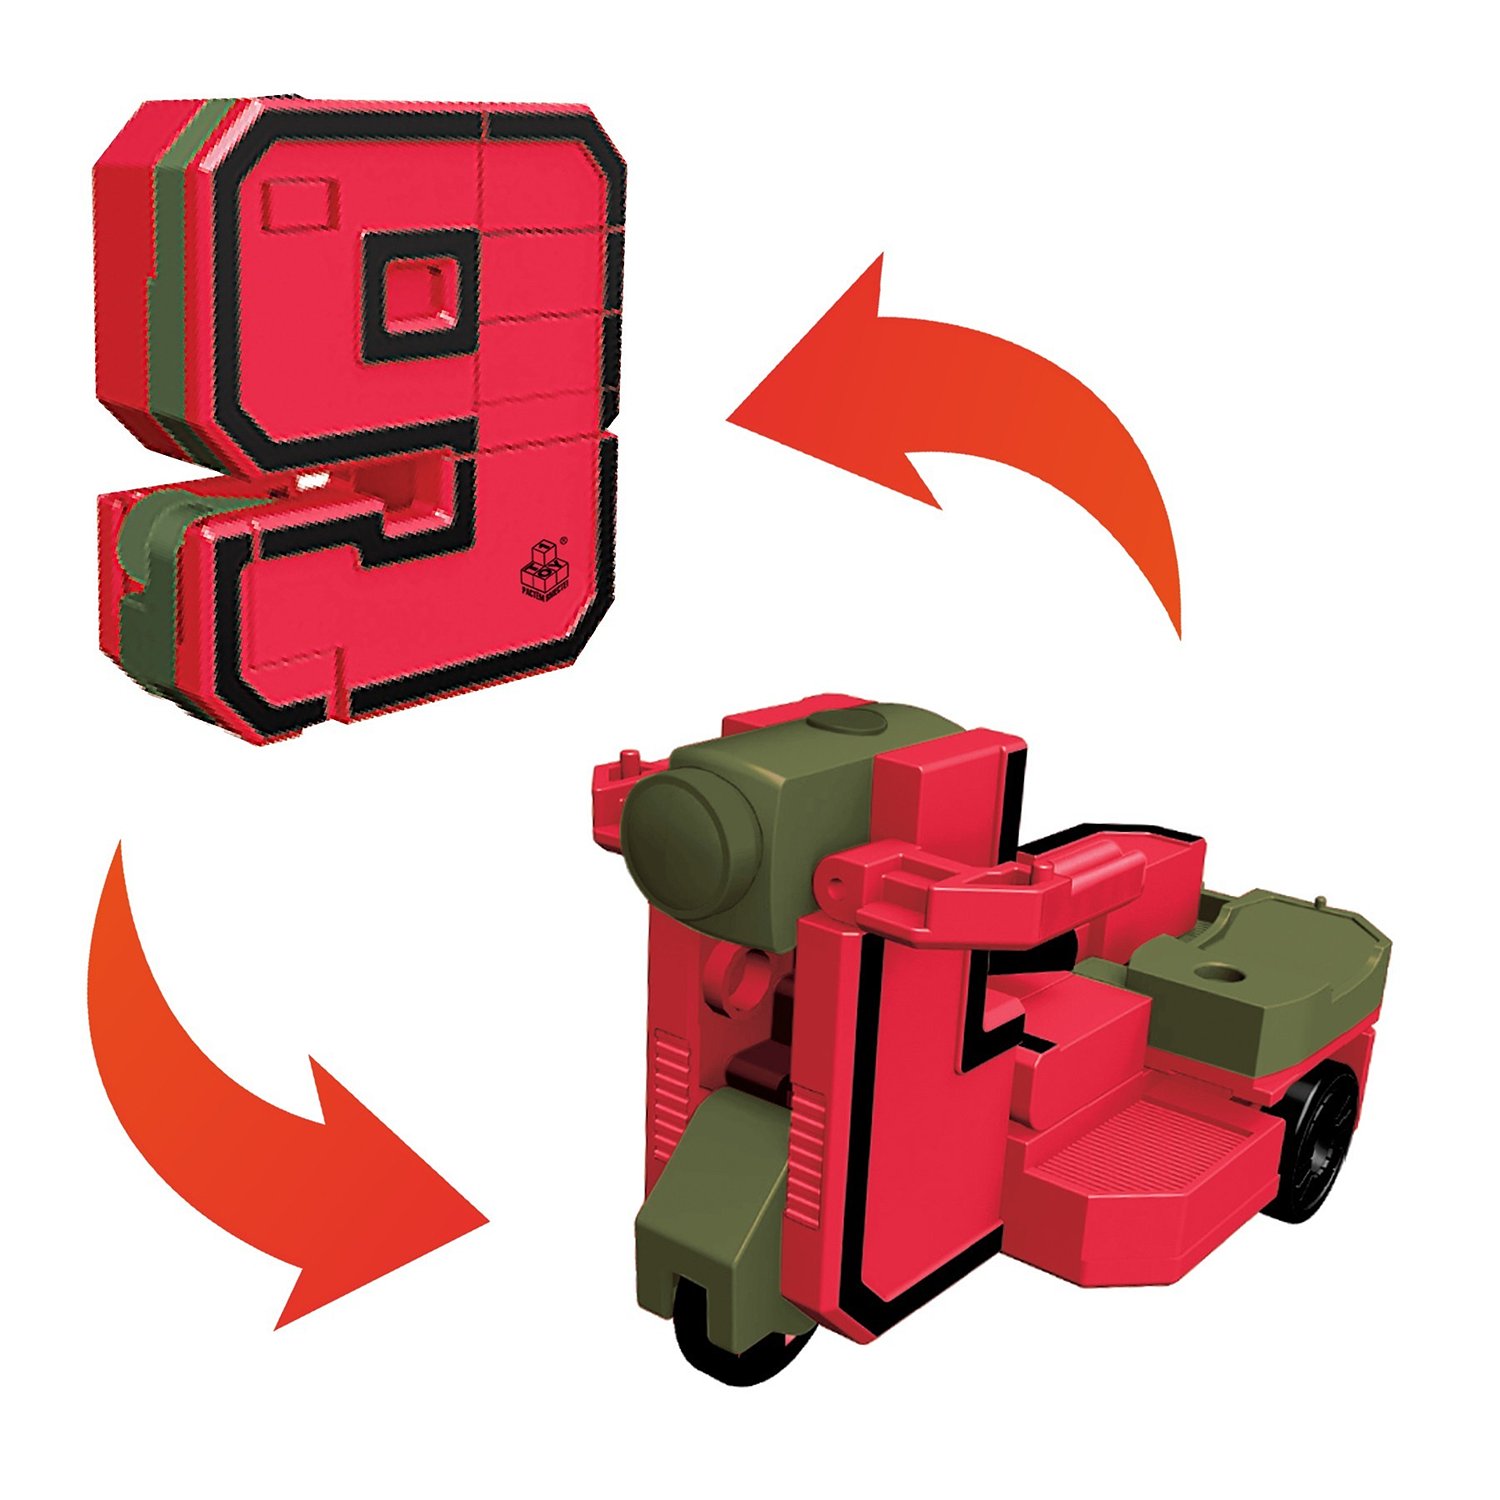 Игровой набор из серии Трансботы - Боевой расчет, 10 цифр и 5 знаков  